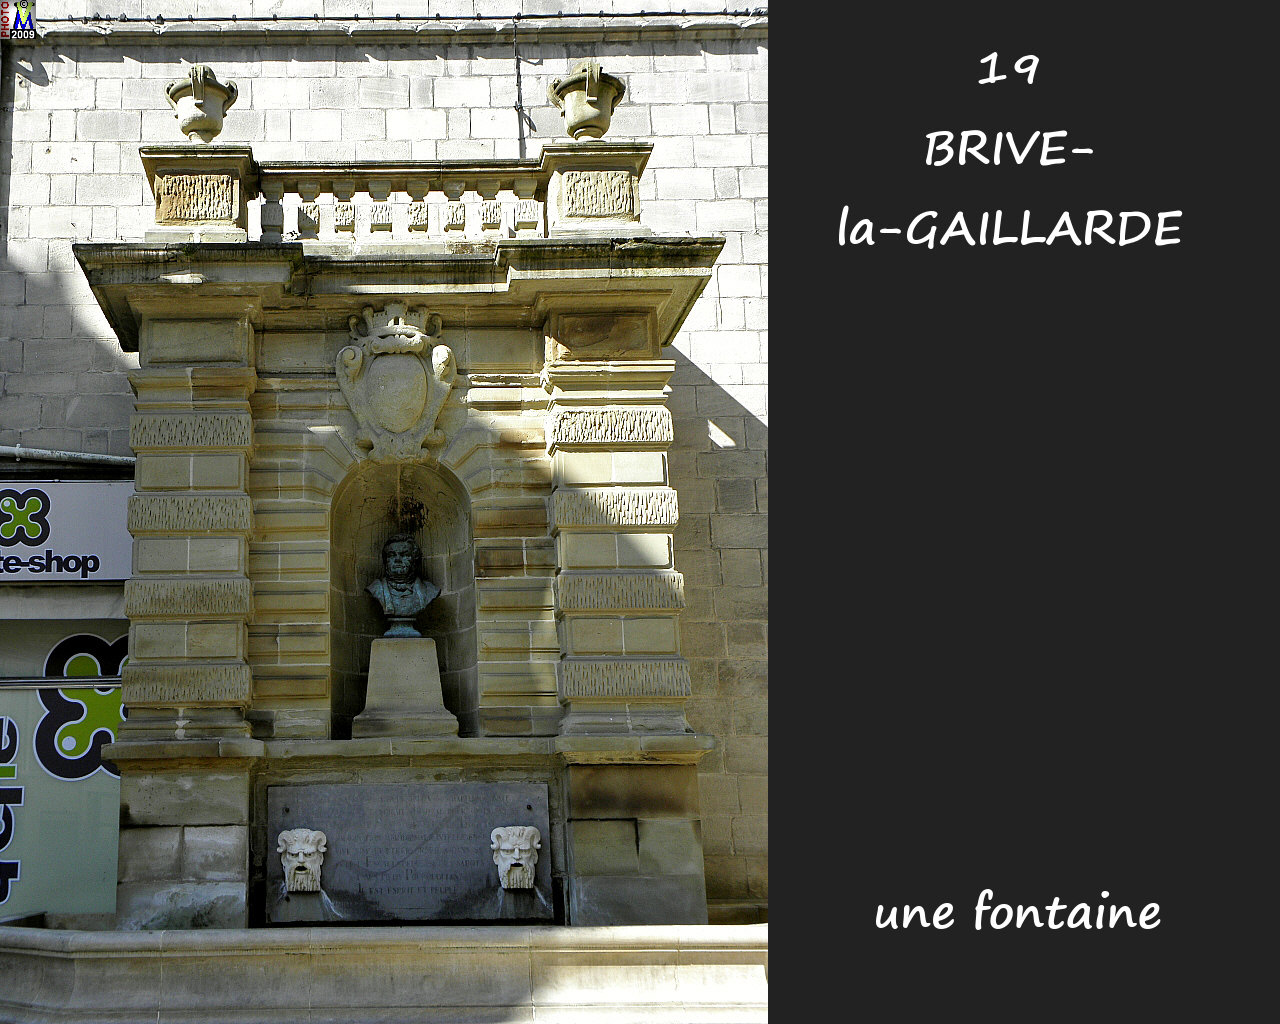 19BRIVE-GAILLARDE_fontaine_110.jpg